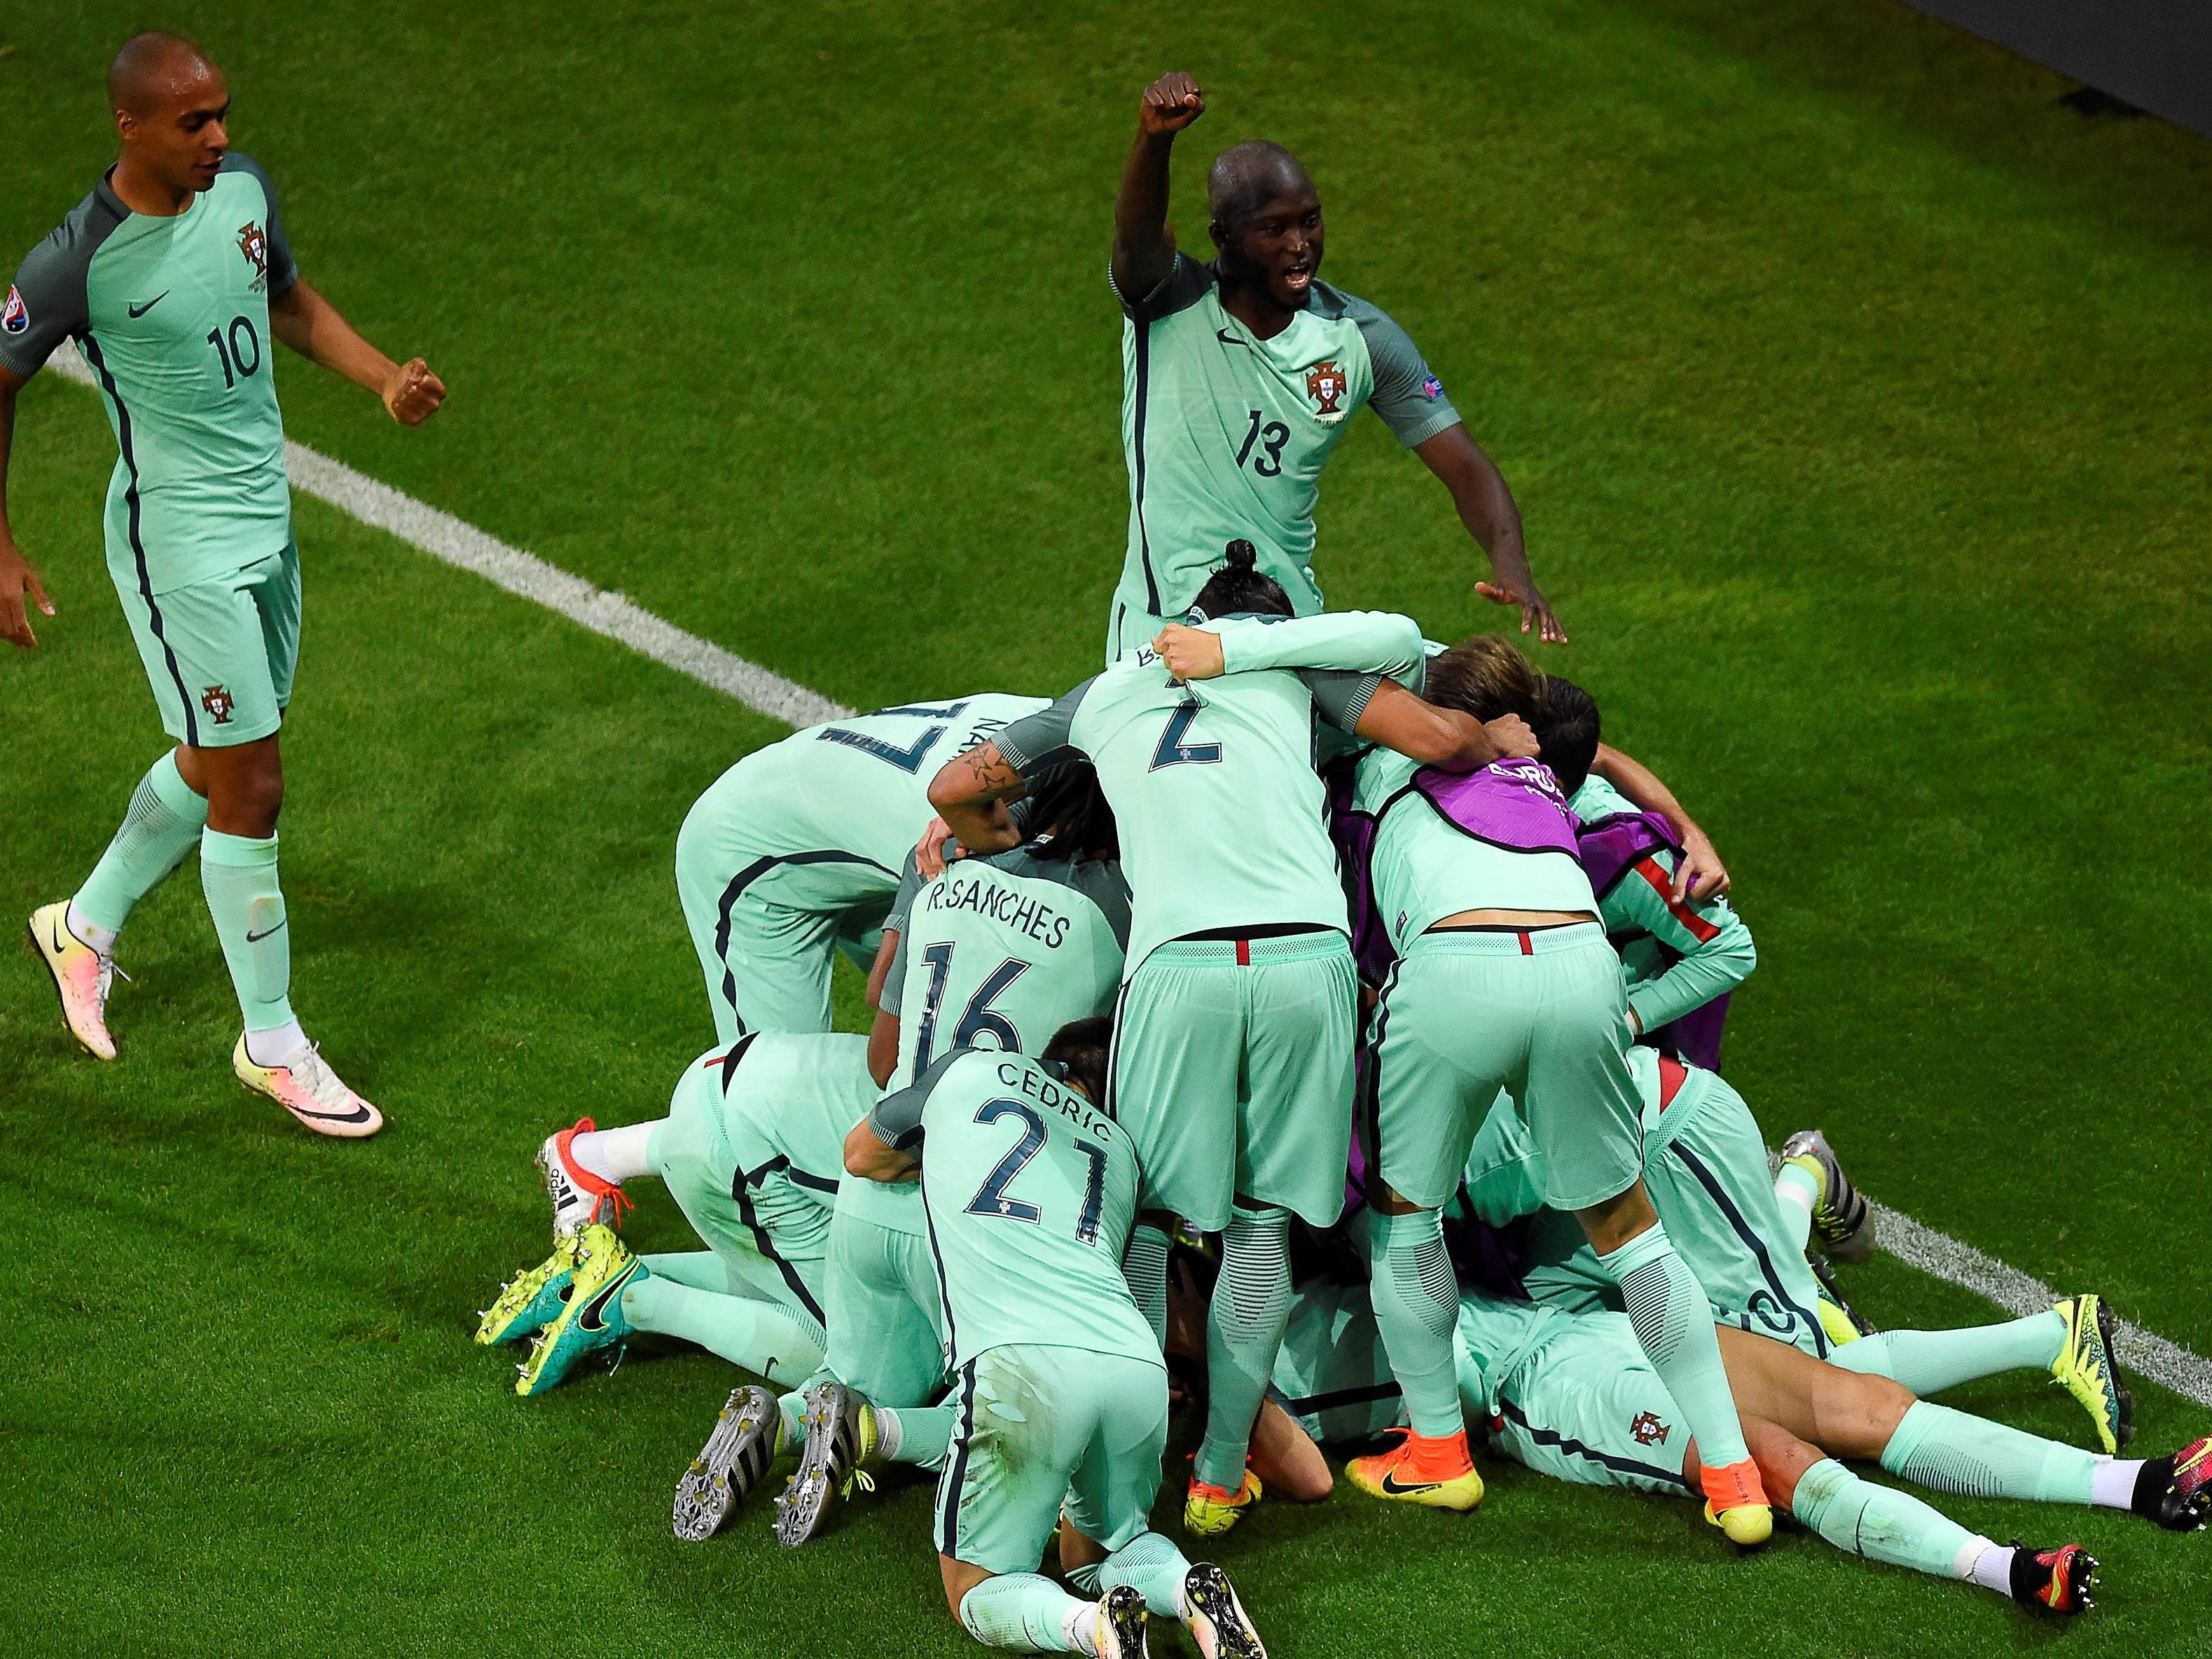 Großer Jubel bei Portugal über den Finaleinzug bei der Euro 2016.